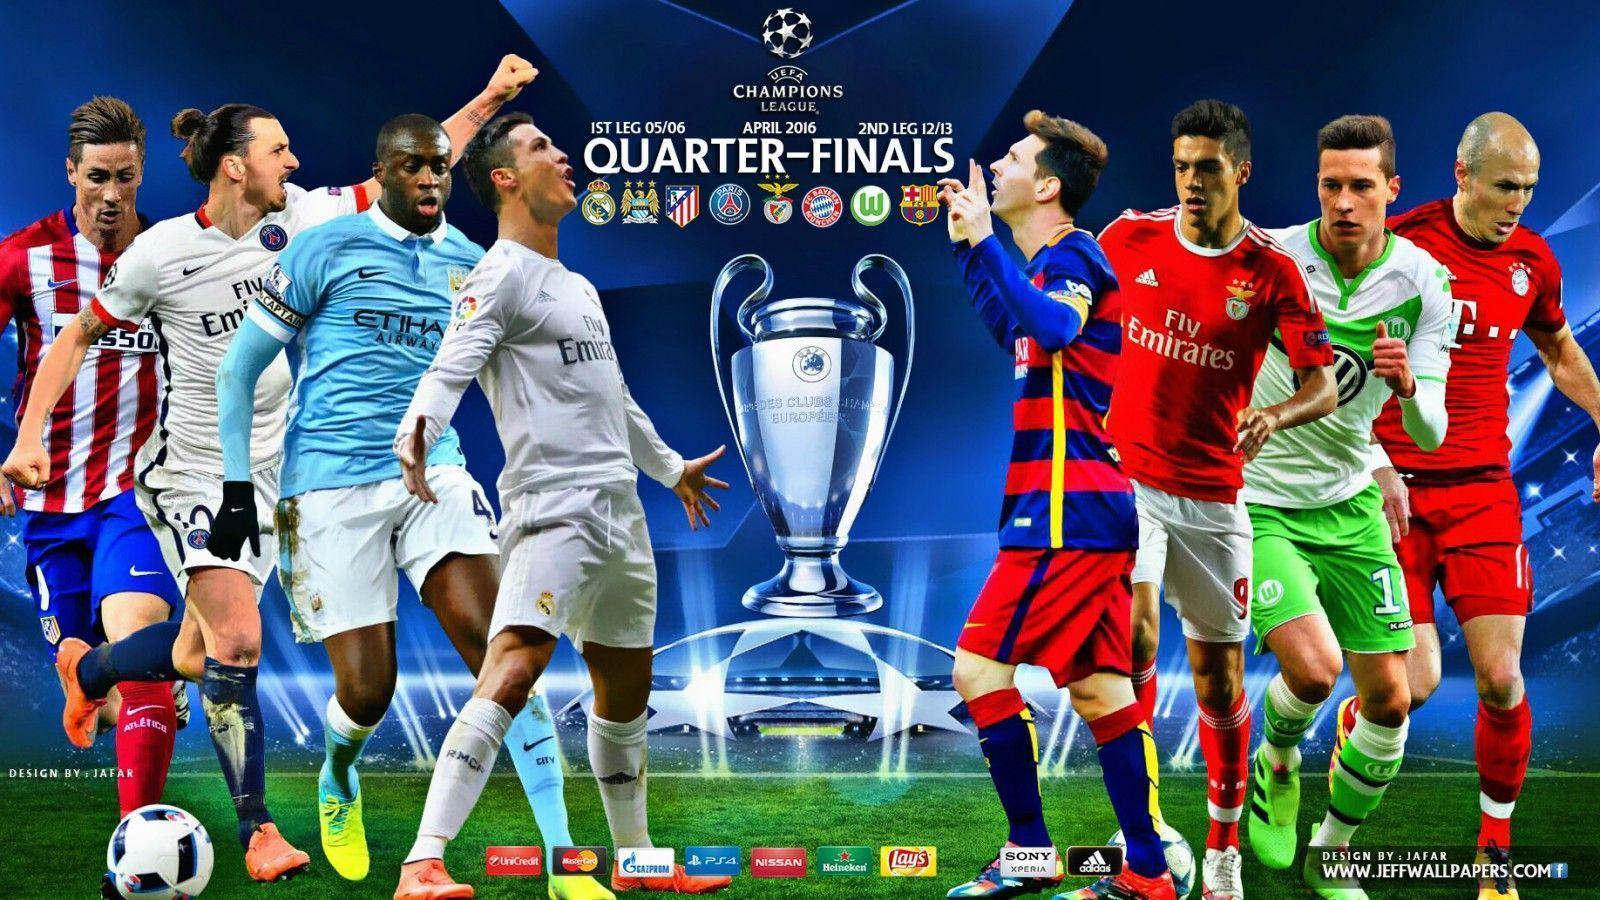 Champions league quarter finals 2016 wallpaper